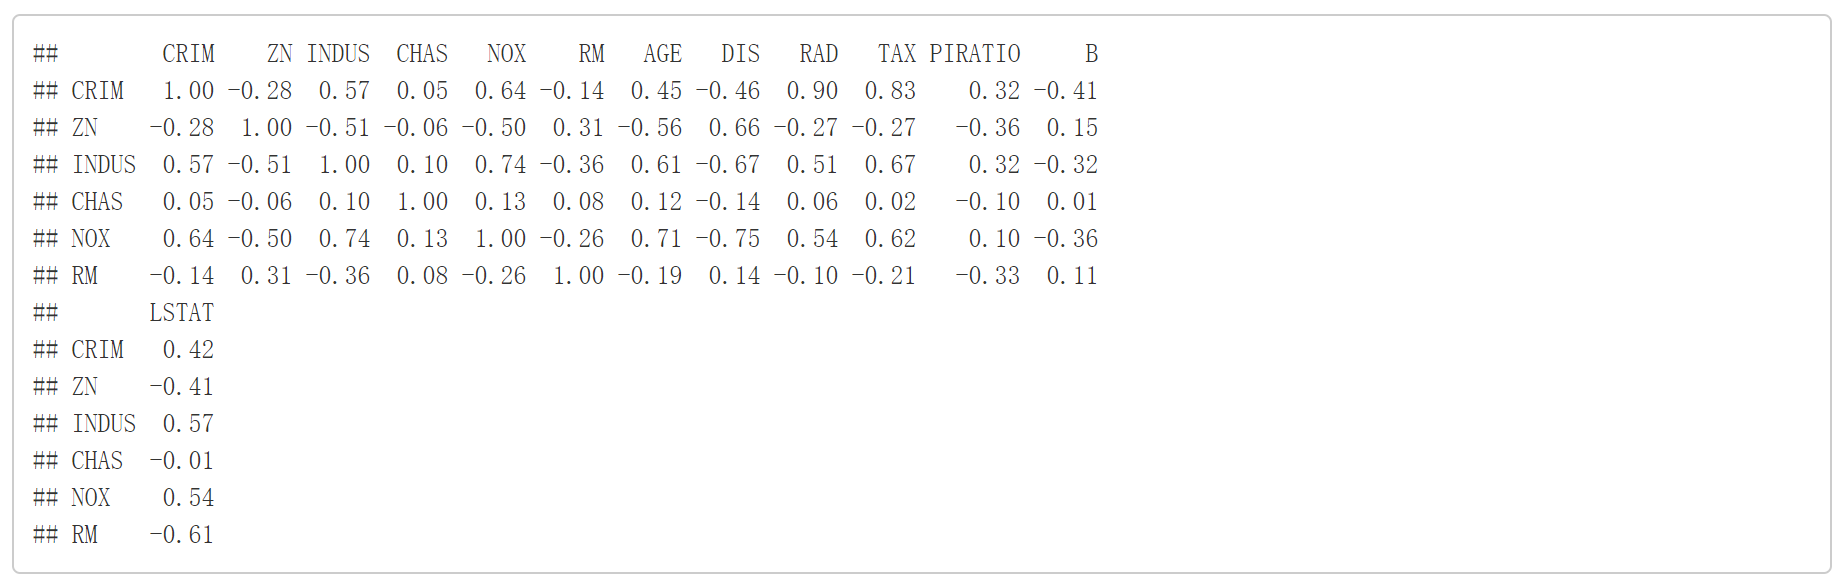 Bart模型应用实例及解析（一）————基于波士顿房价数据集的回归模型